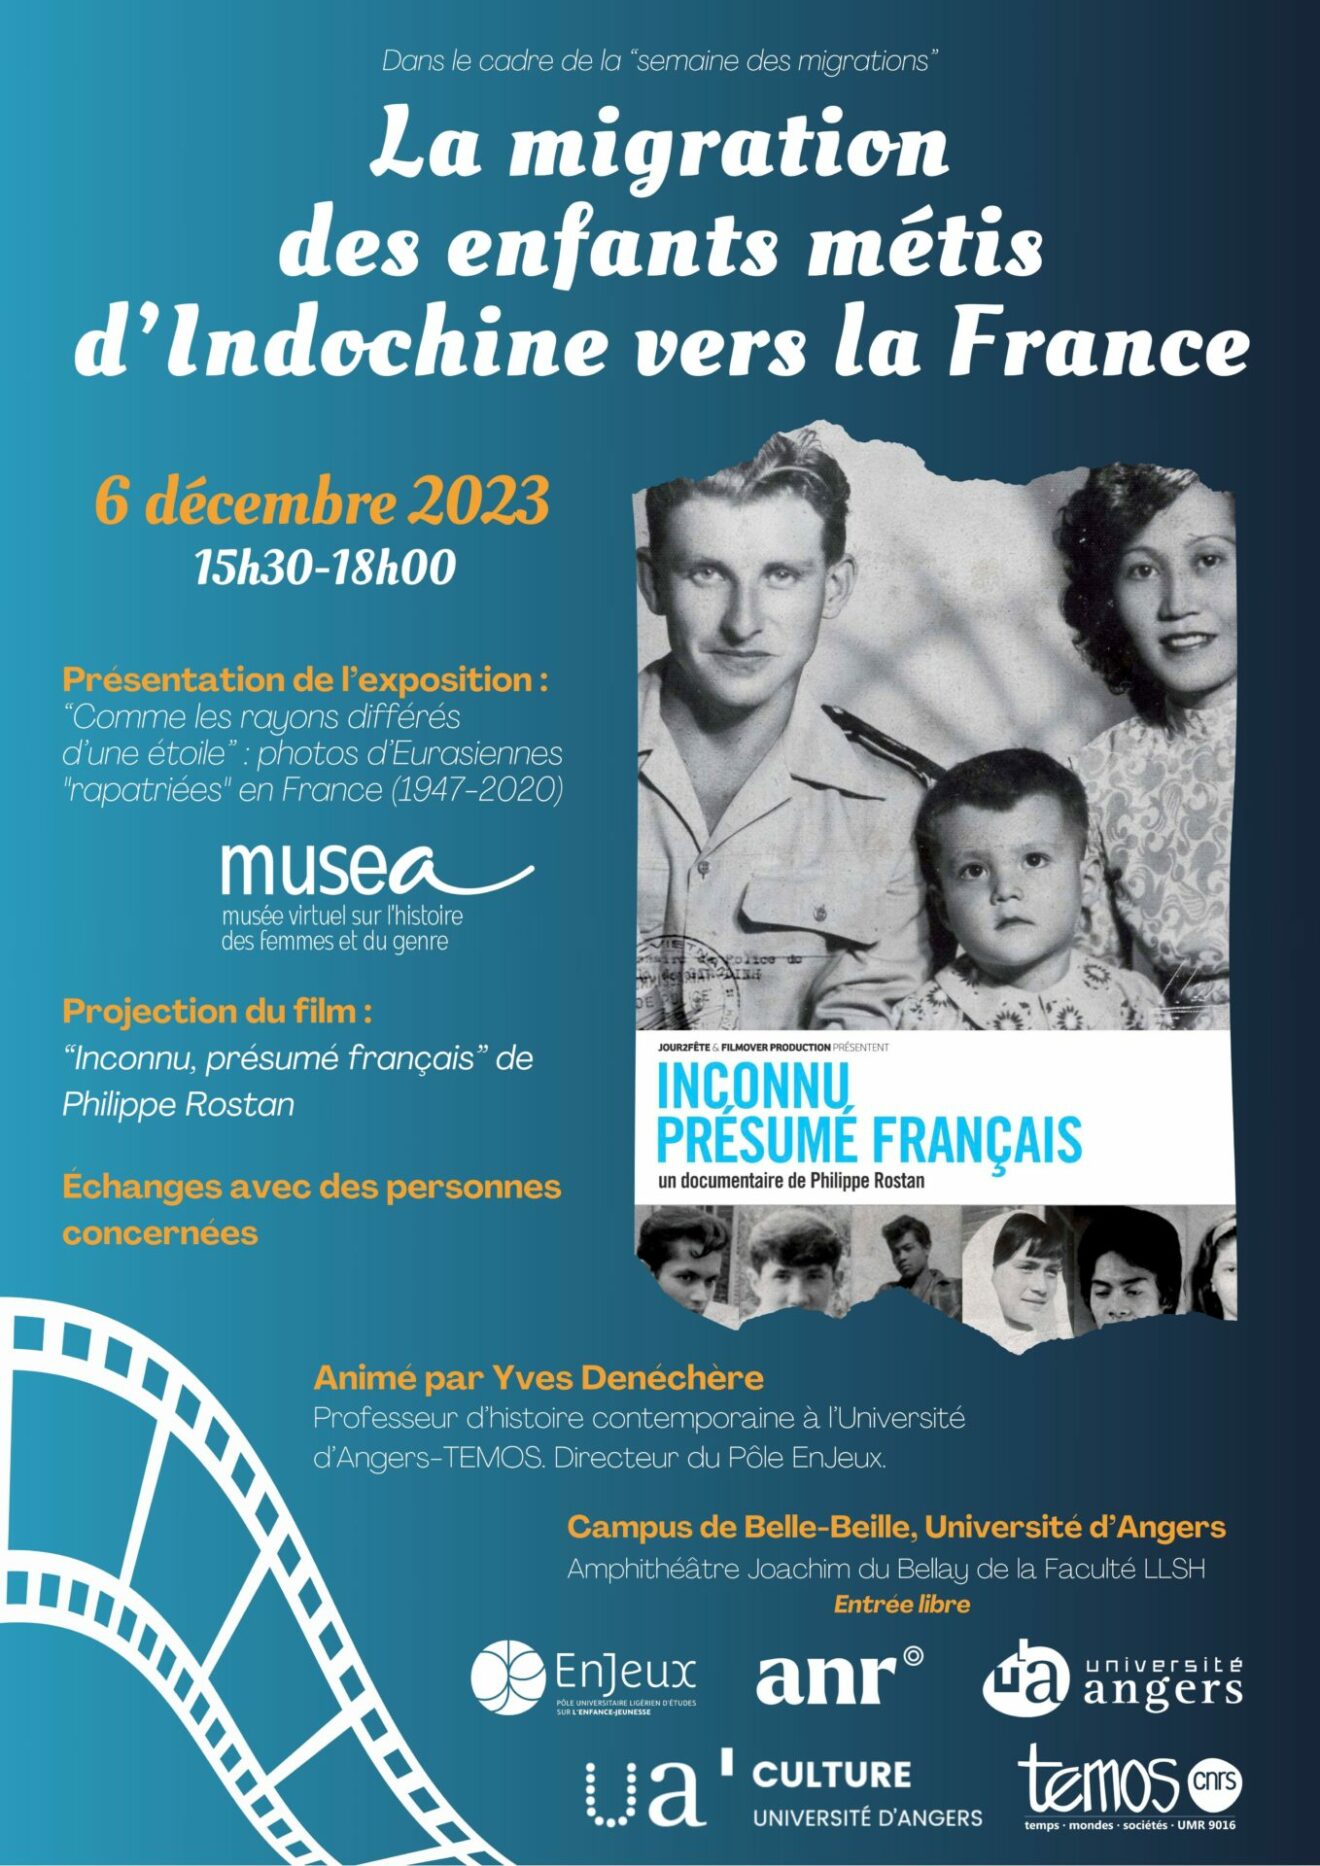 La migration des enfants métis d'Indochine vers la France (6.12.23)